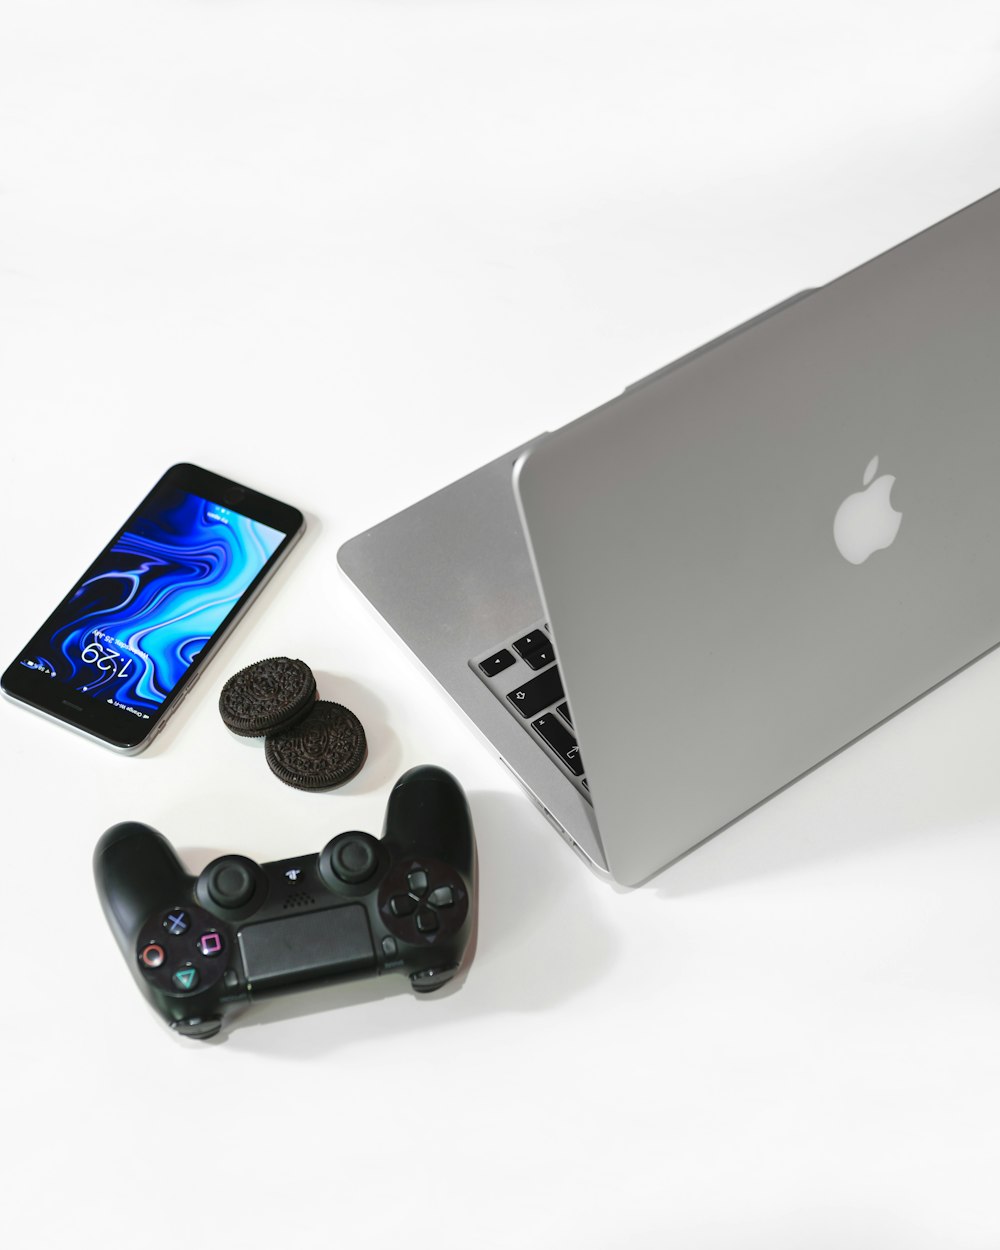 검은색 Sony 게임 패드 옆에 있는 은색 MacBook